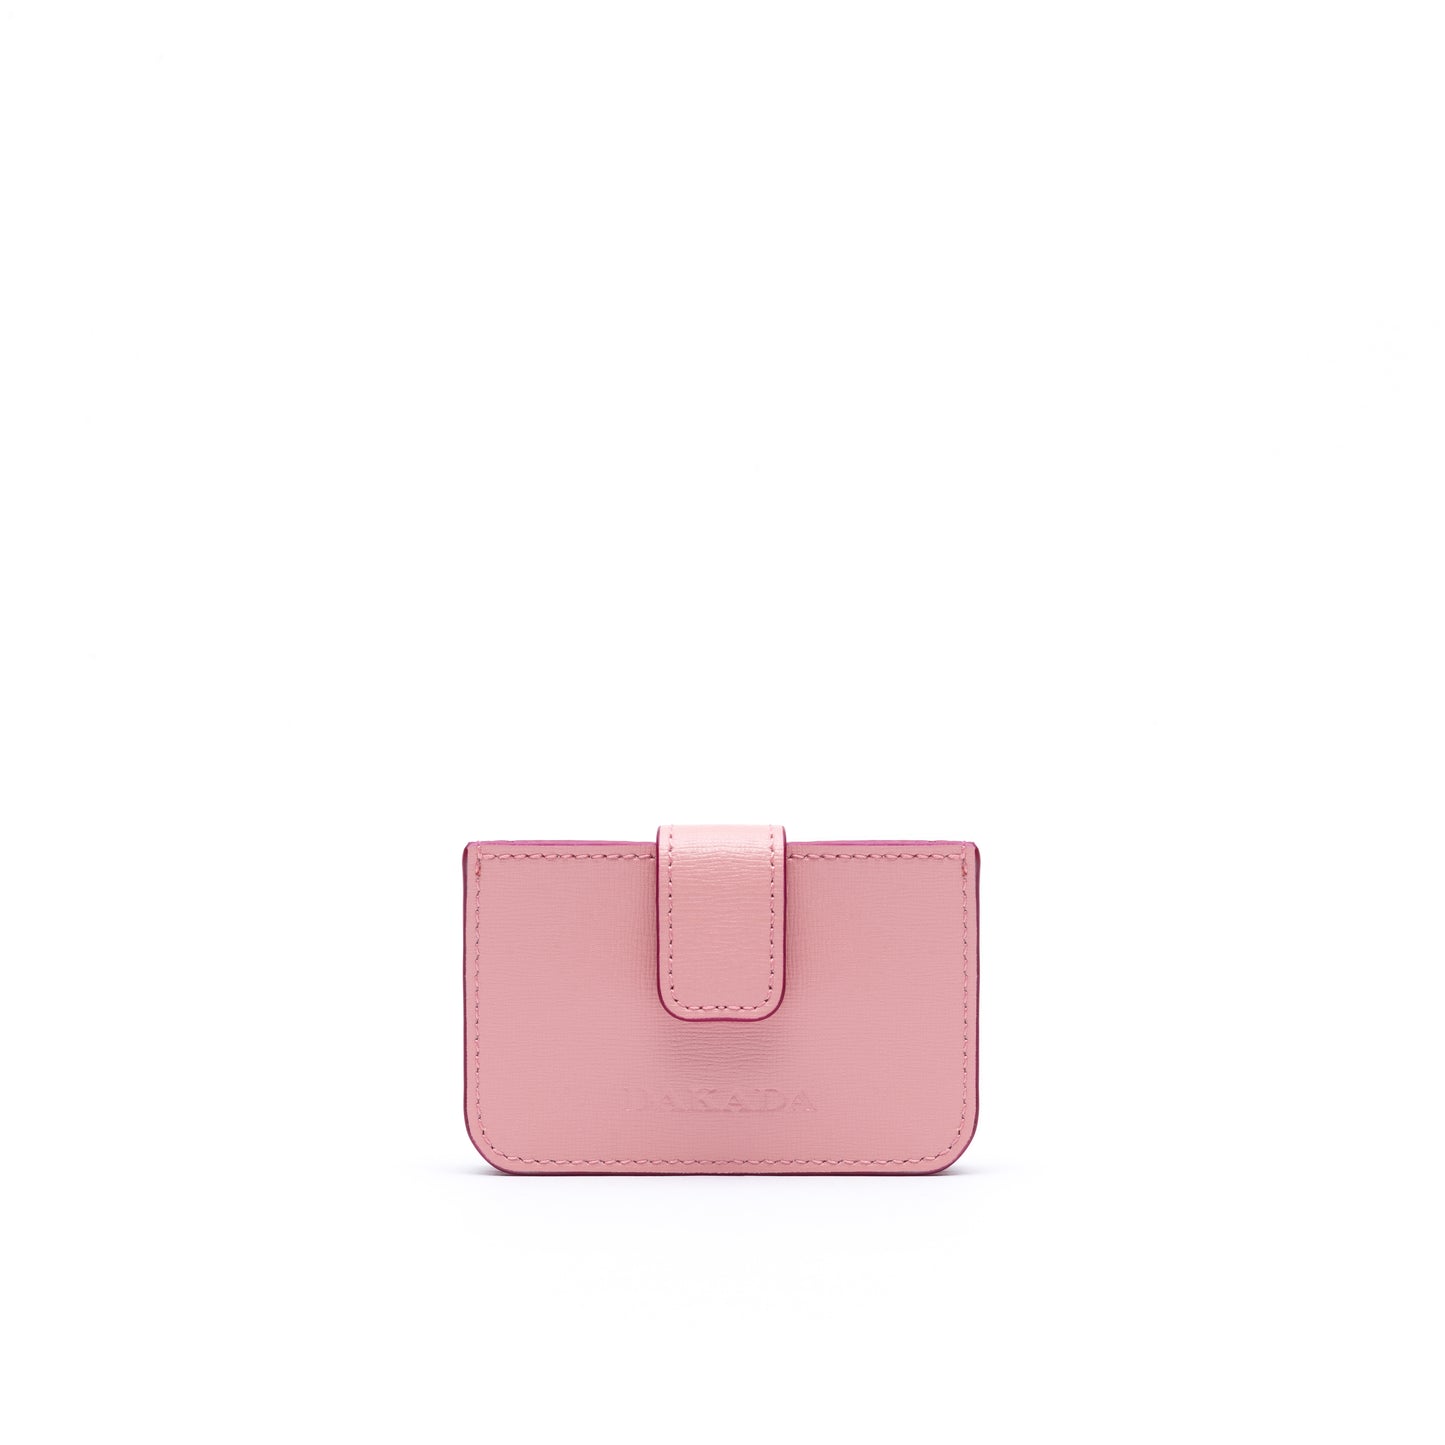 LA Card Holder- Pink Leather